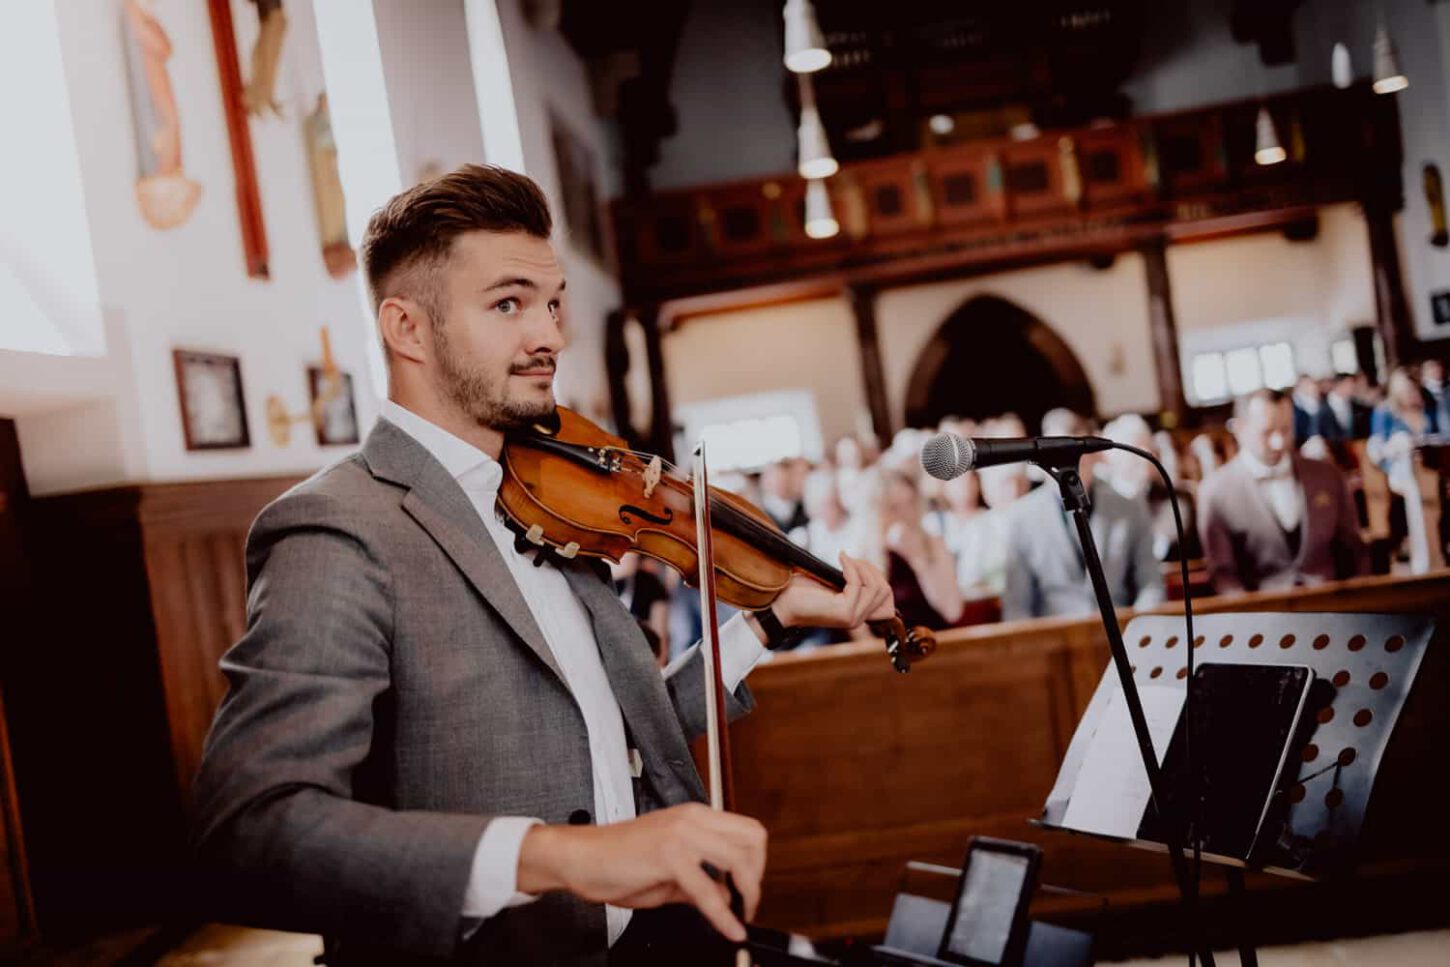 Hochzeitsmusiker spielt Geige in einer Kirche. Hochzeitstipp vom Fotograf Chris Hartlmaier